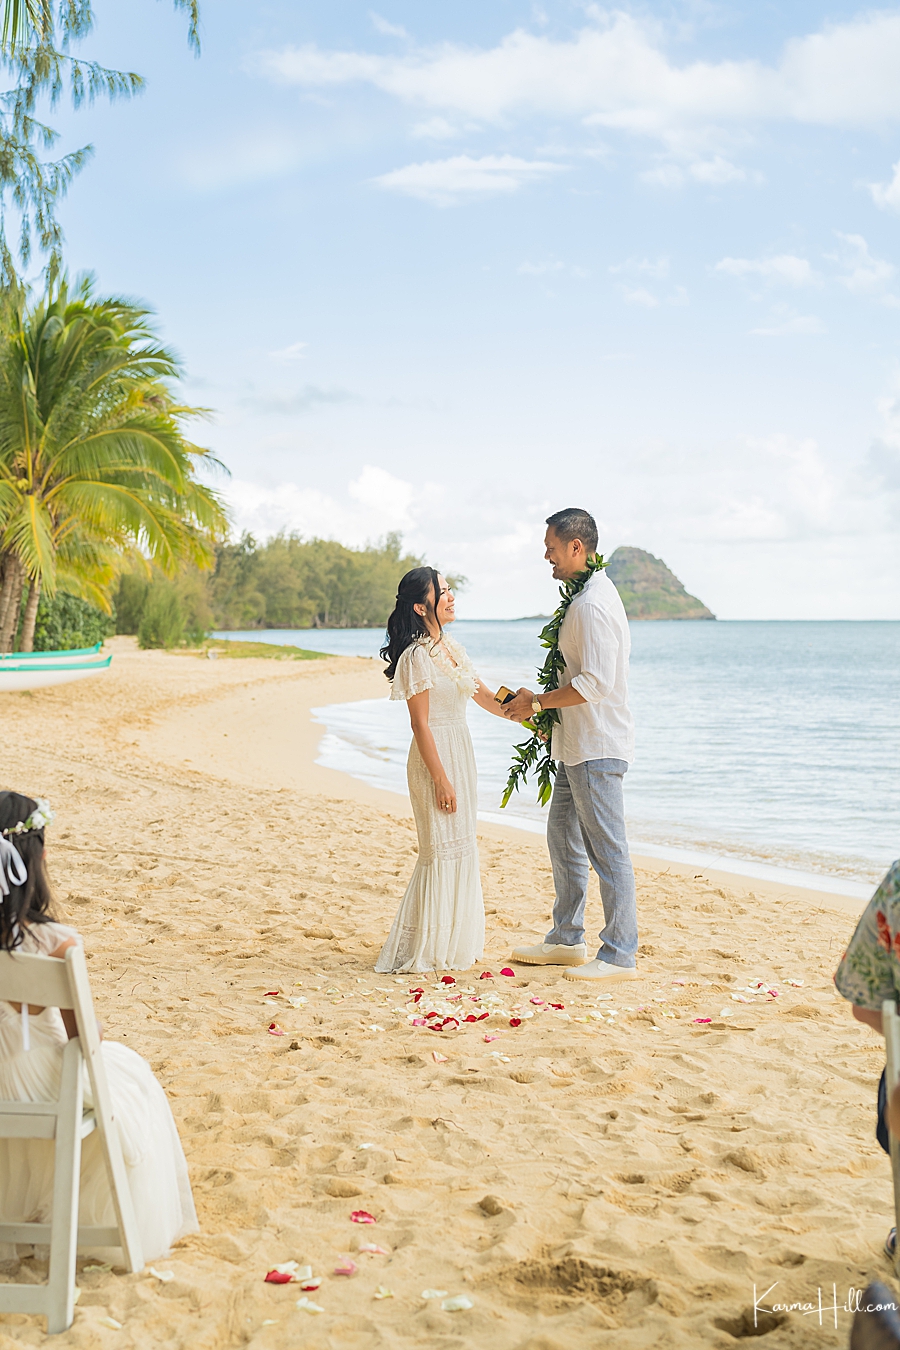 Hawaii wedding venues Oahu
